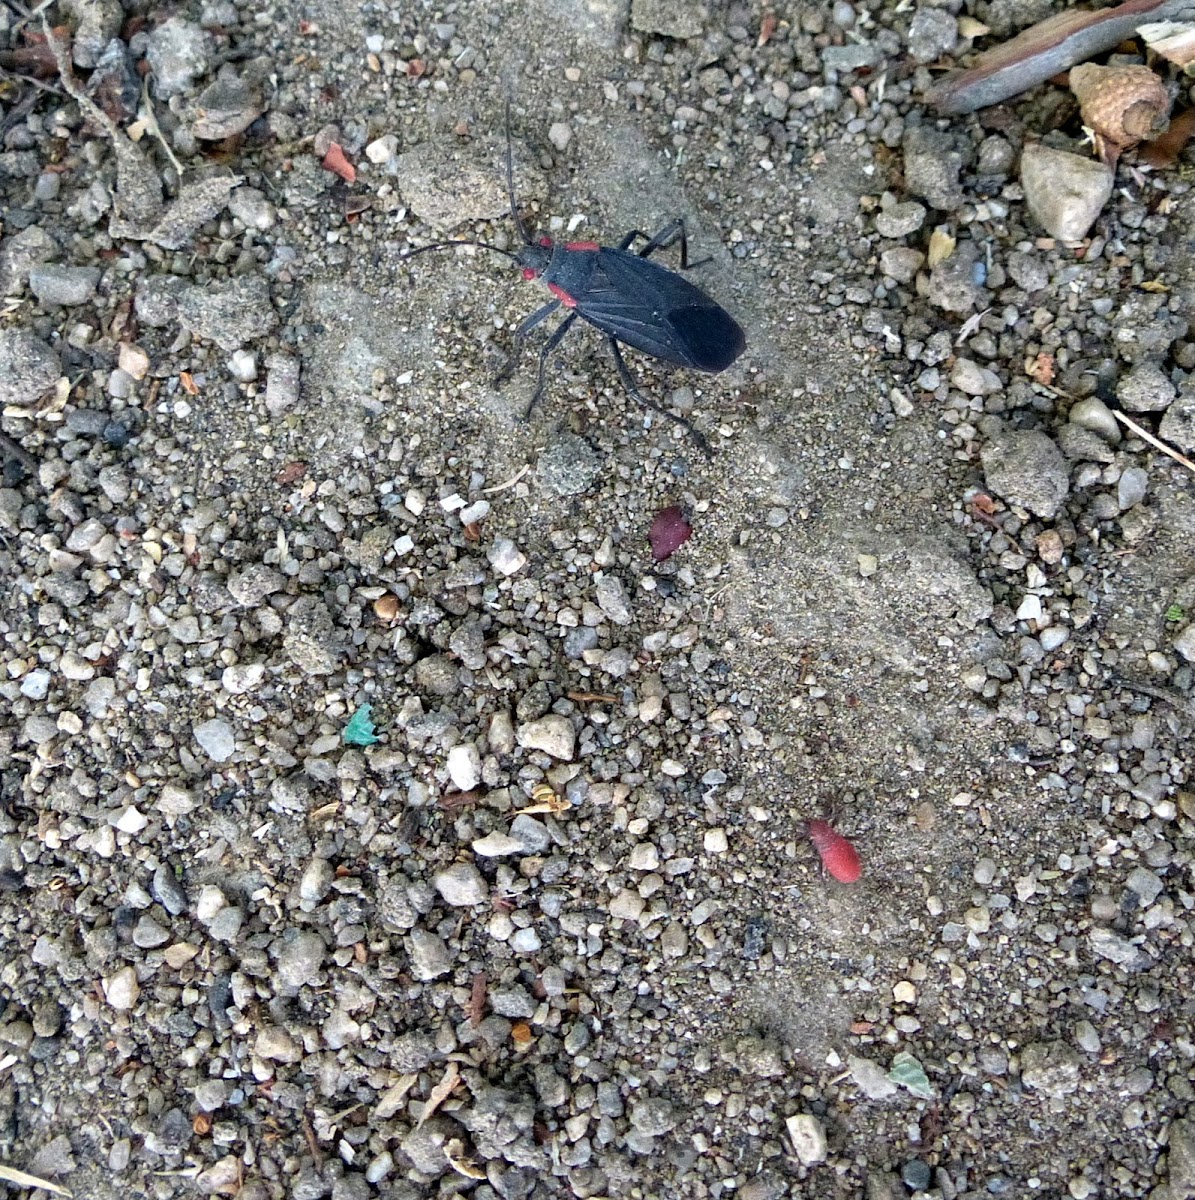 Red Shouldered bug